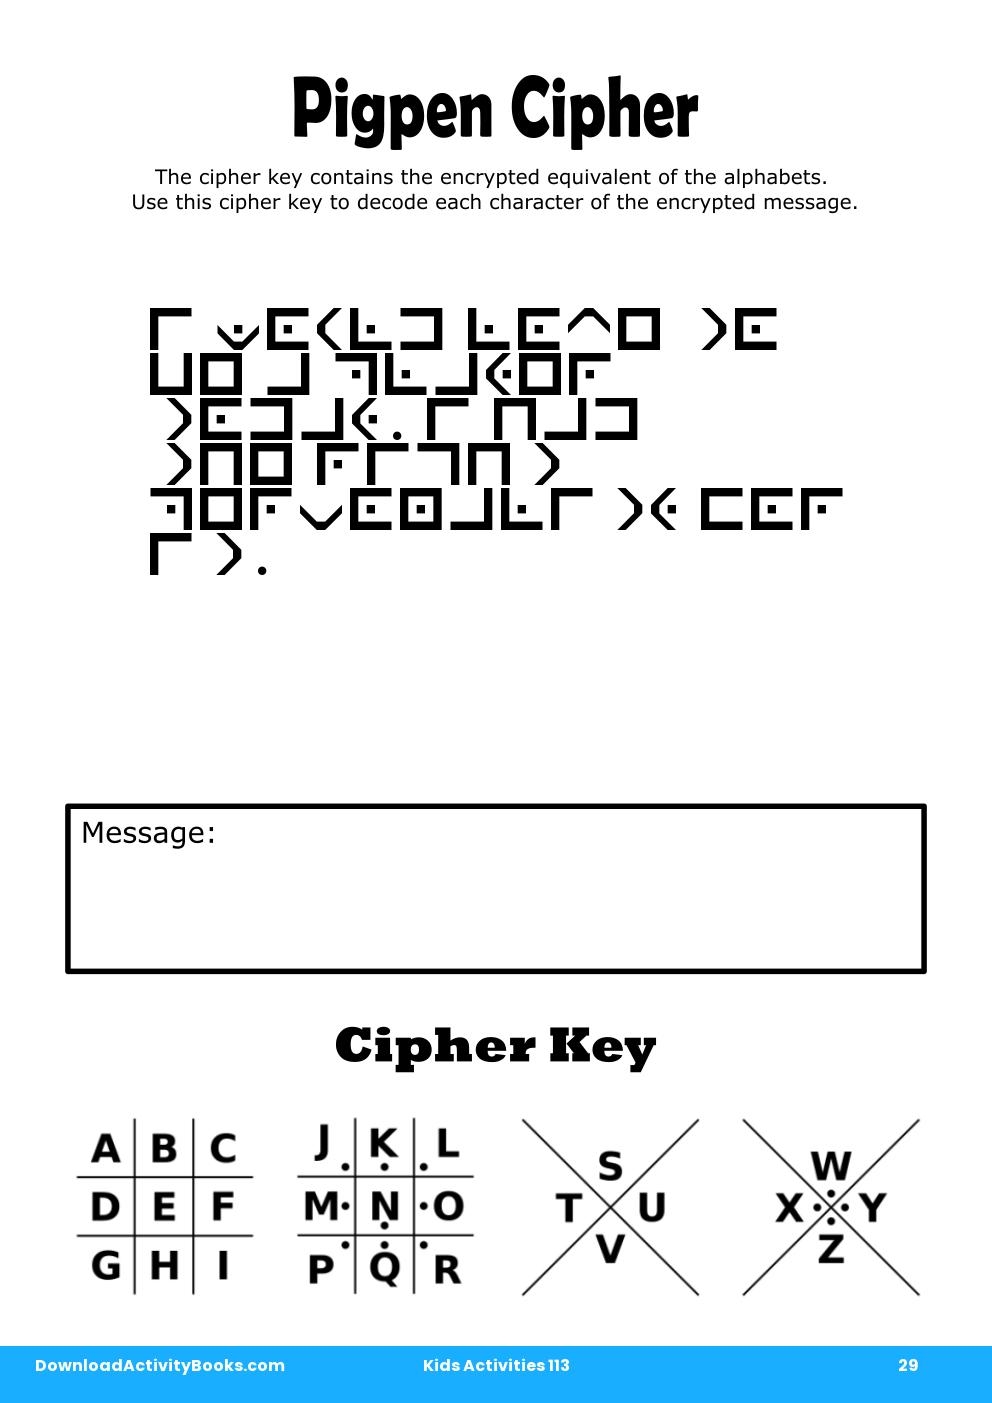 Pigpen Cipher in Kids Activities 113